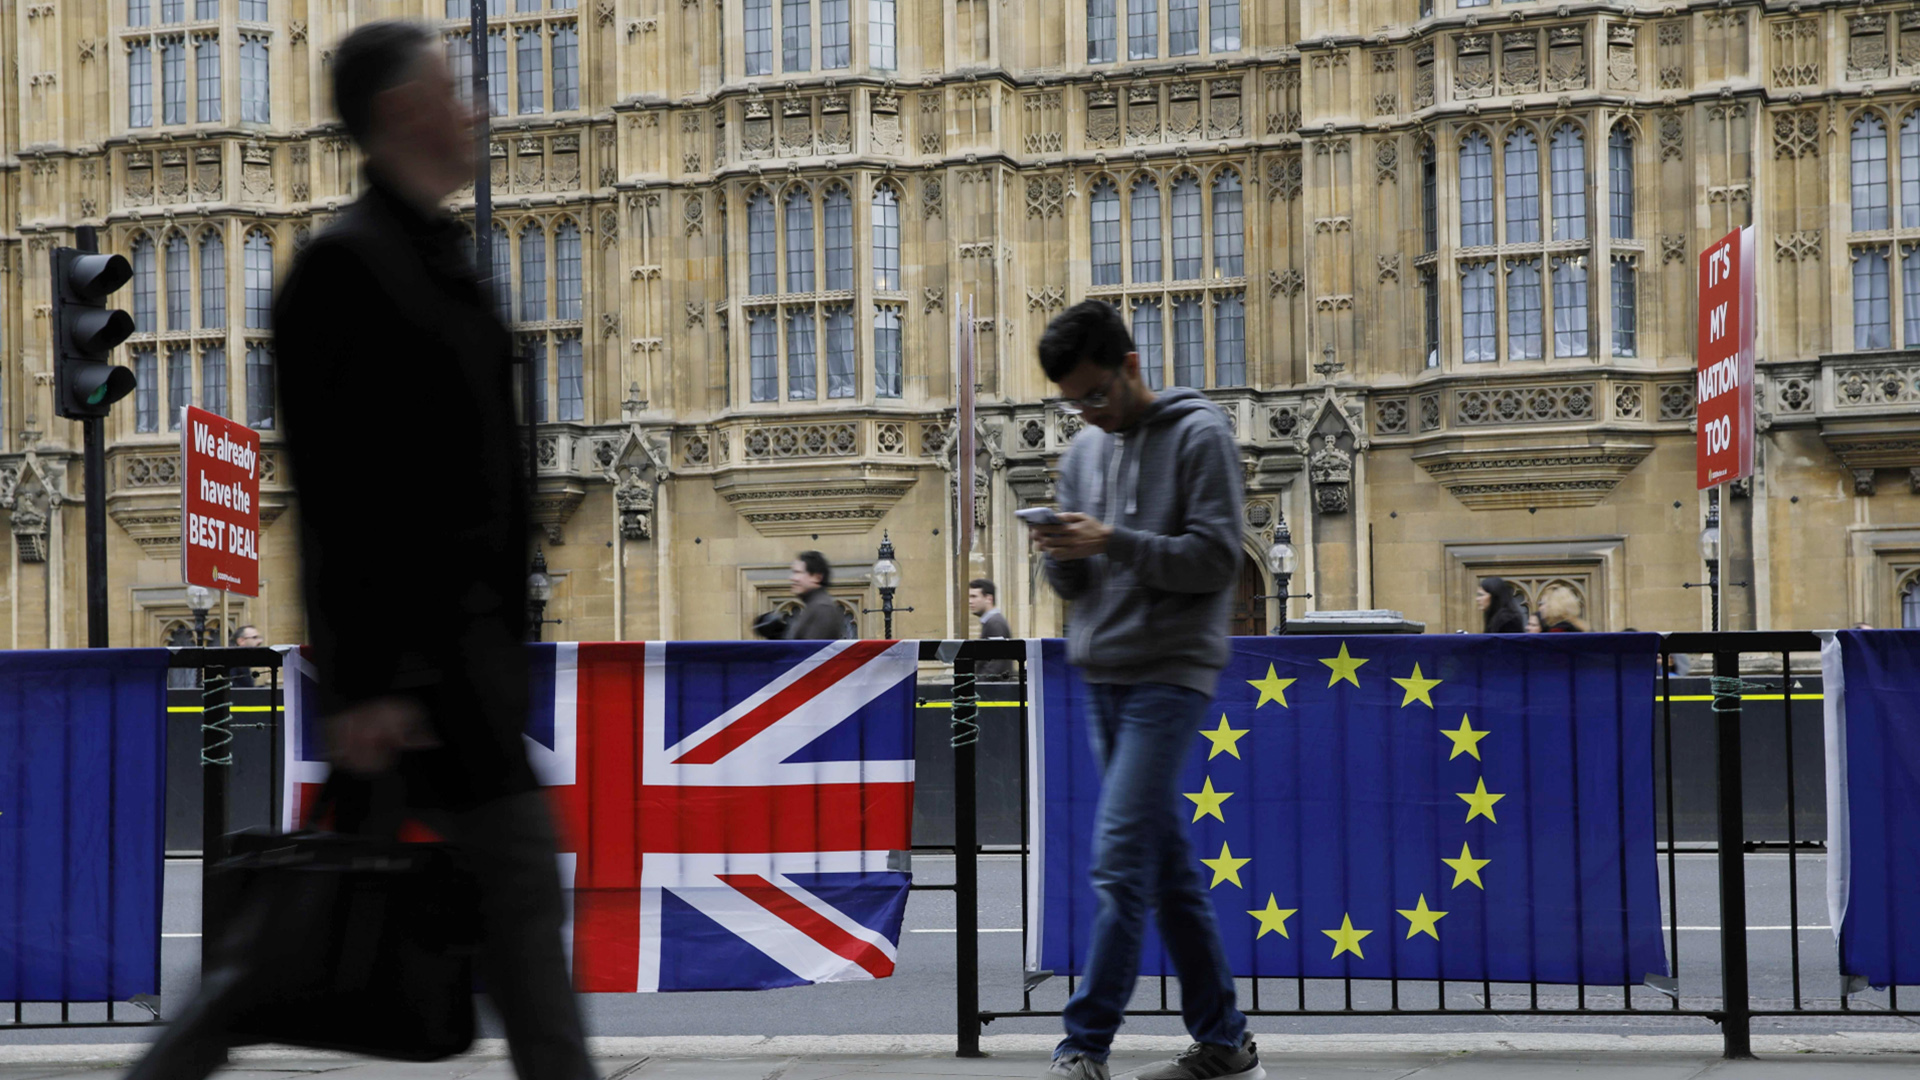 Passanten laufen an der britischen und europäischen Flagge vor dem britischen Parlament vorbei. | Bildquelle: AFP